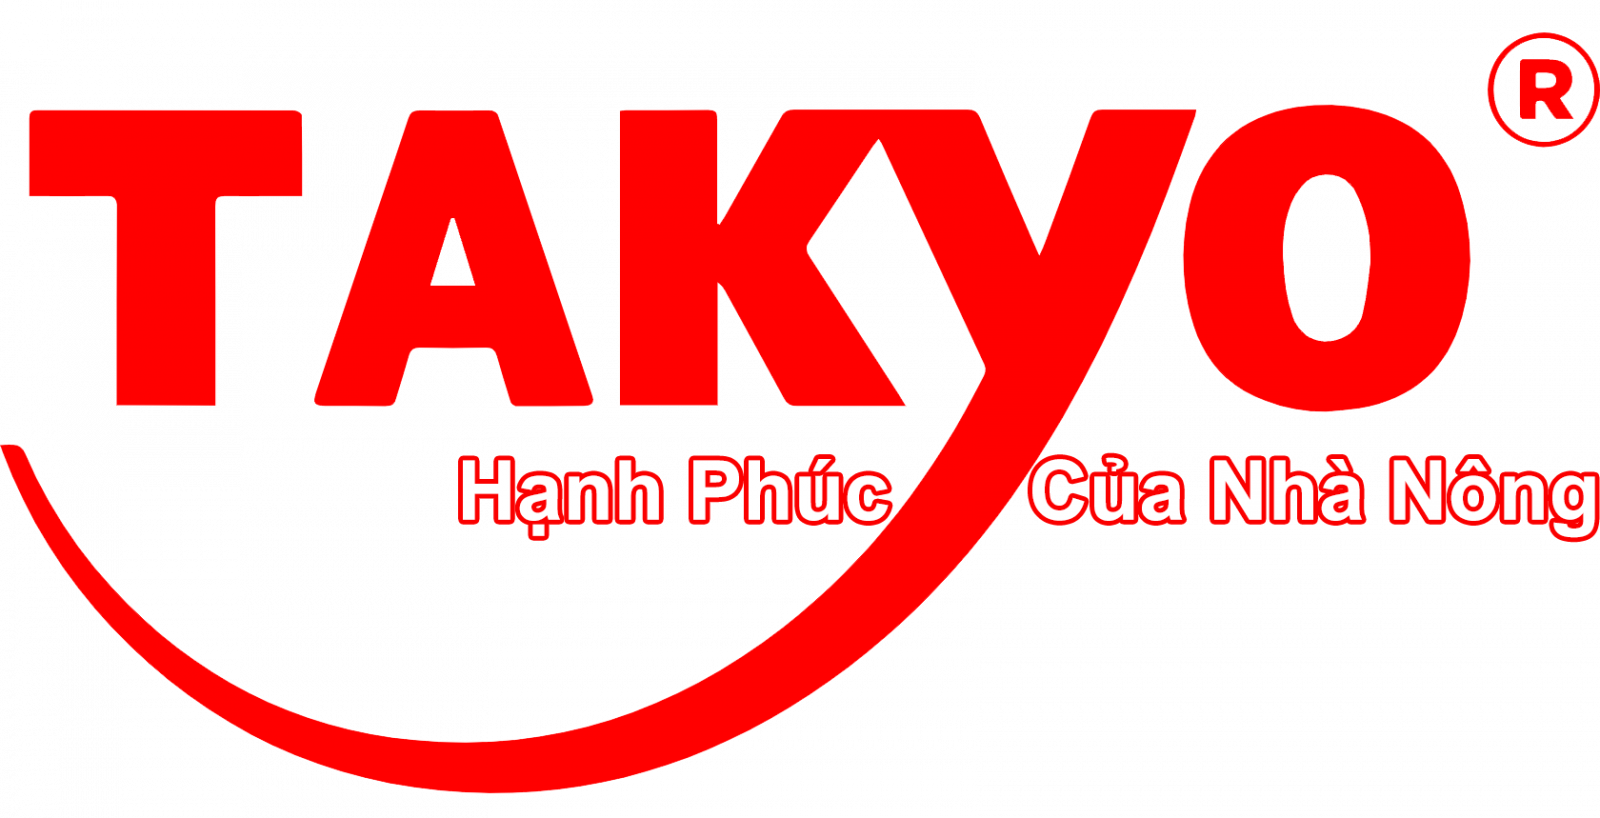 Thương hiệu Takyo tại Việt Nam